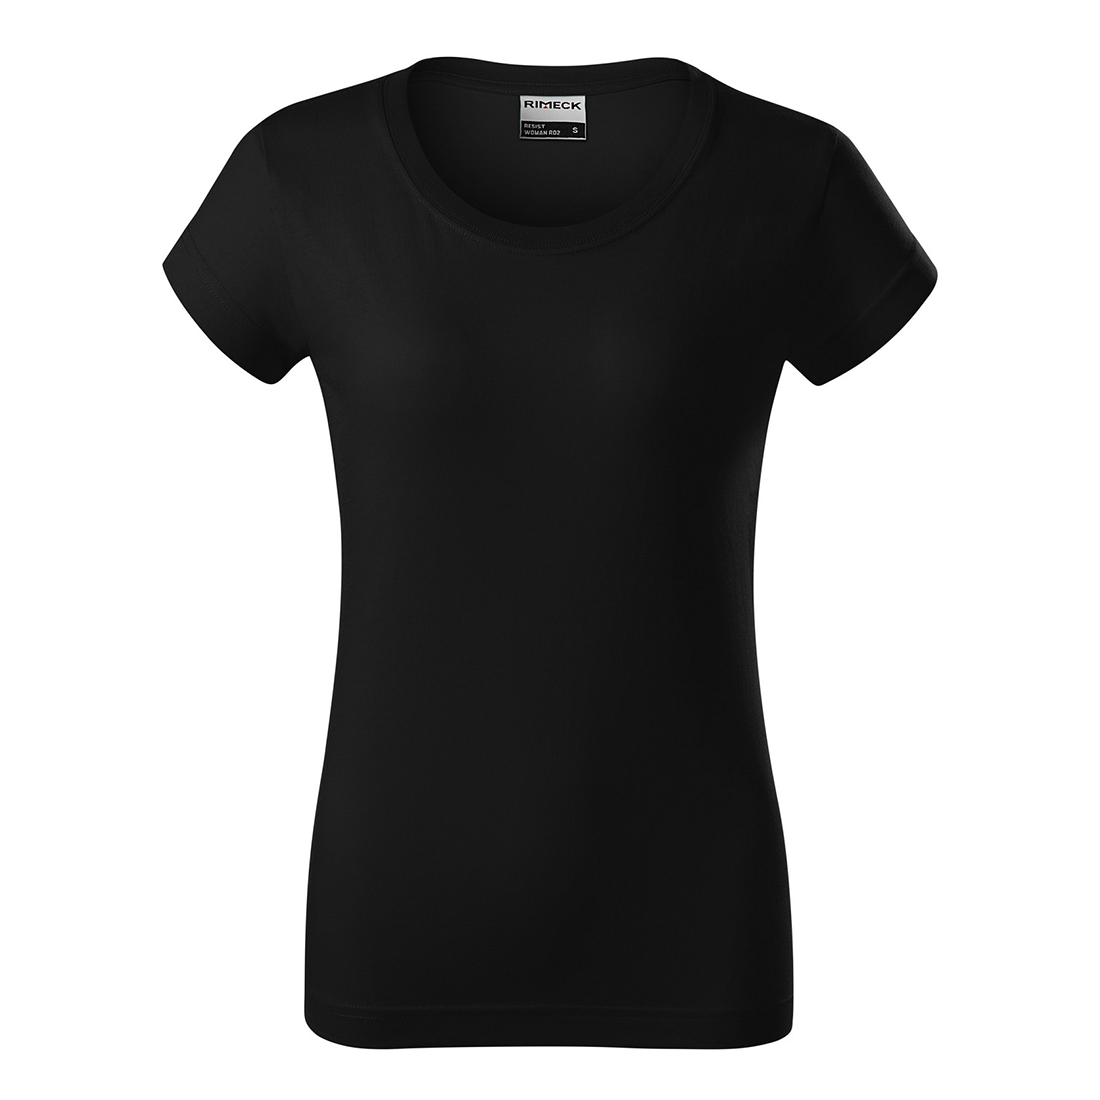 T-shirt femme en coton prélavé - Les vêtements de protection